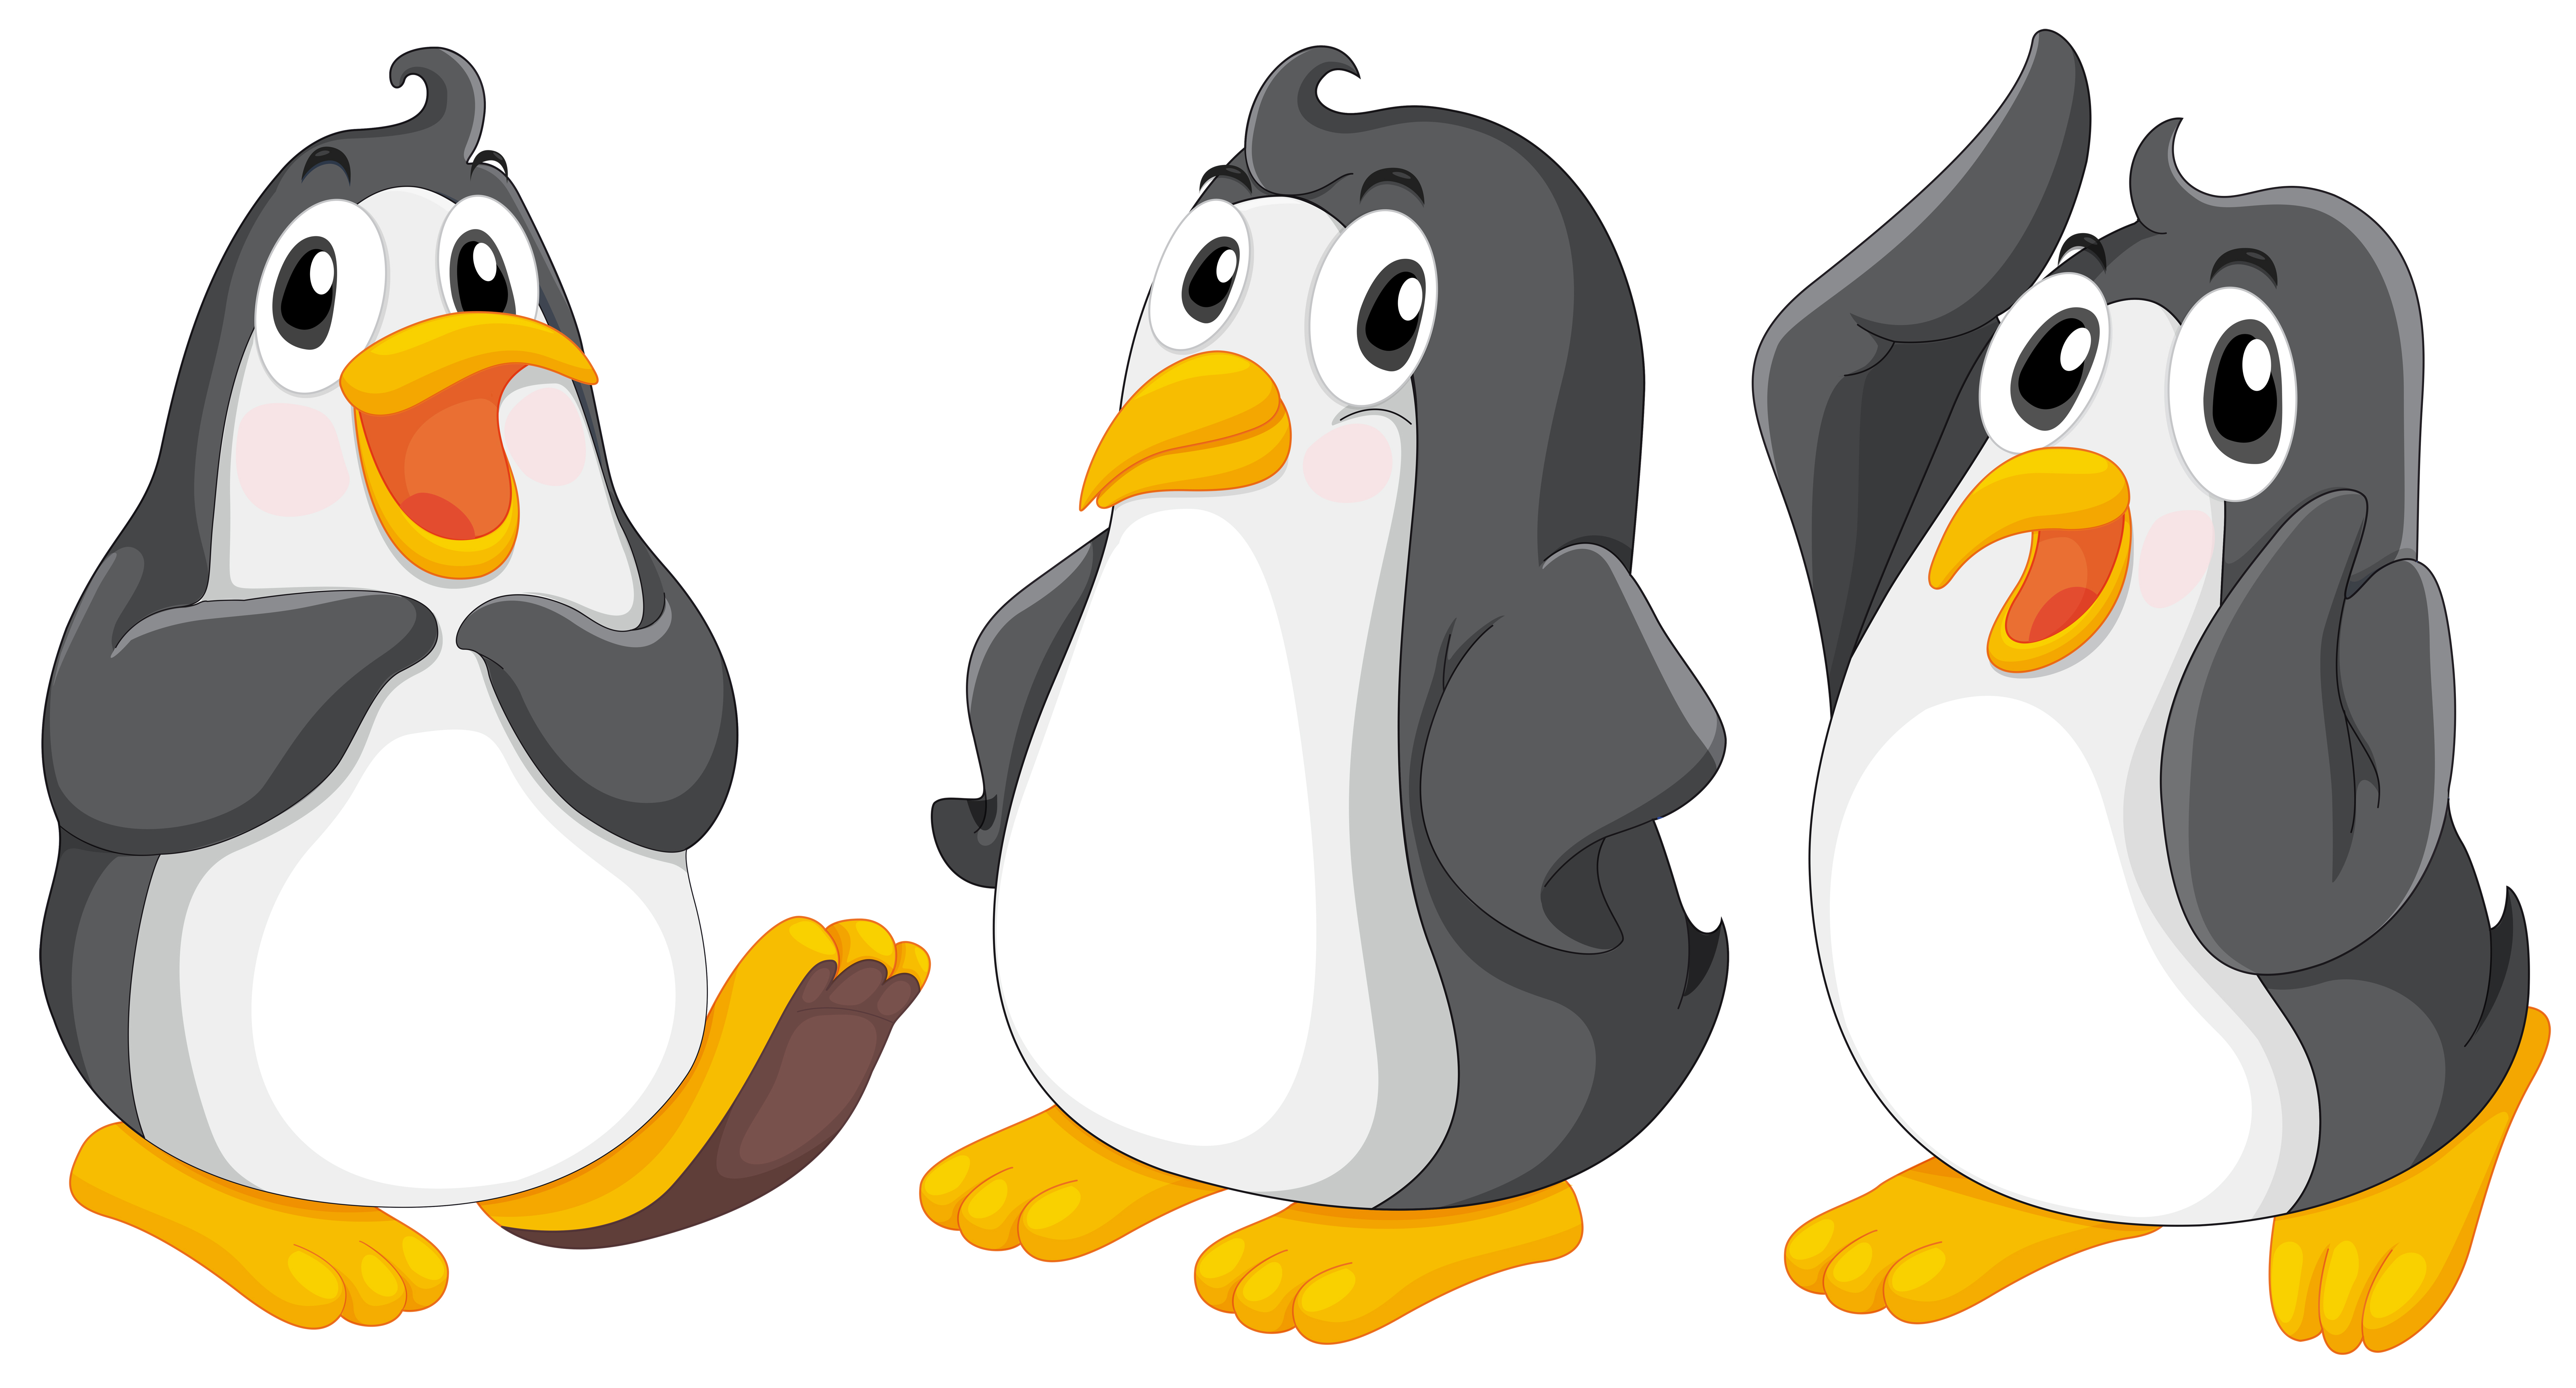 Three cute penguins 361333 Download Free Vectors